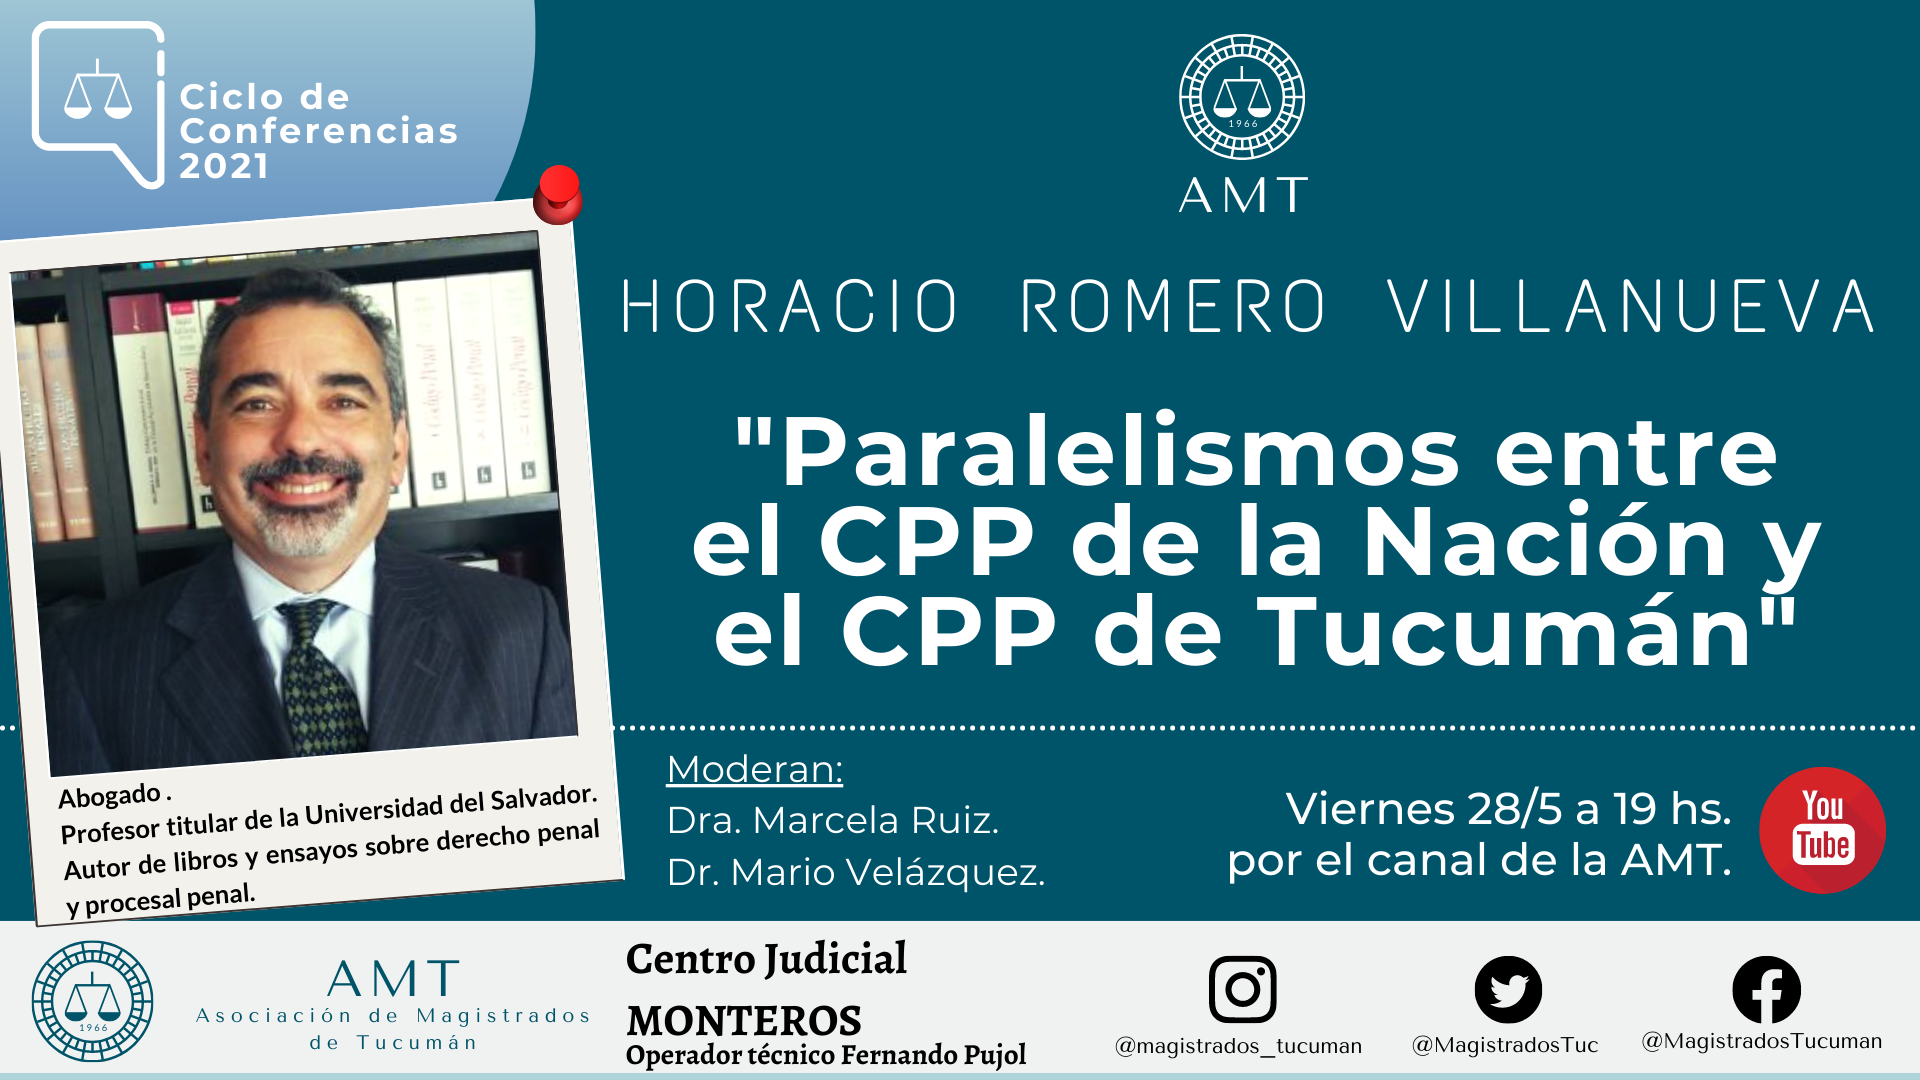 Vuelva a ver la conferencia de Horacio Romero Villanueva «Paralelismos entre el CPP de la Nación y el CPP de Tucumán»